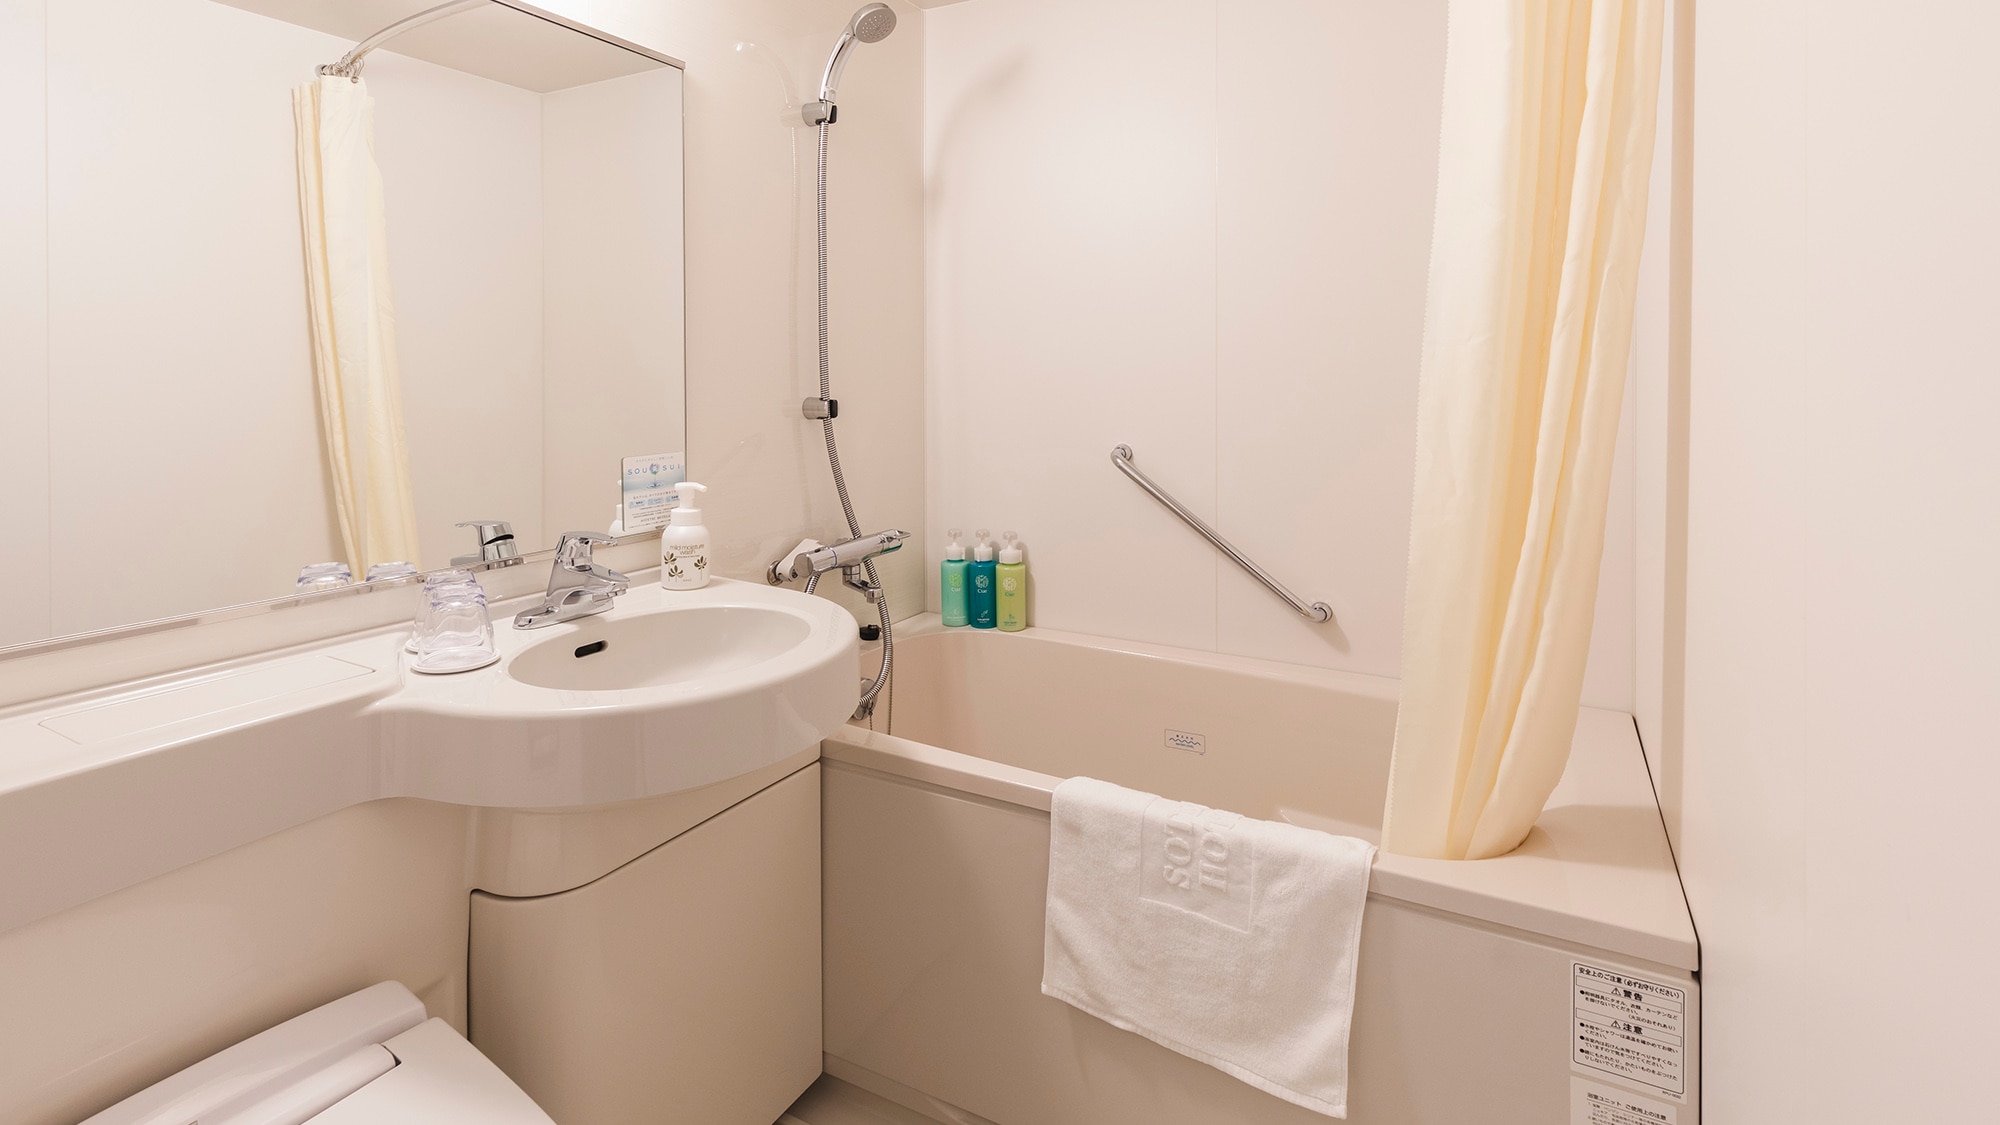 ・[ห้องน้ำแฝด] คุณสามารถยืดแขนขาและผ่อนคลายในอ่างอาบน้ำก้นลึกได้